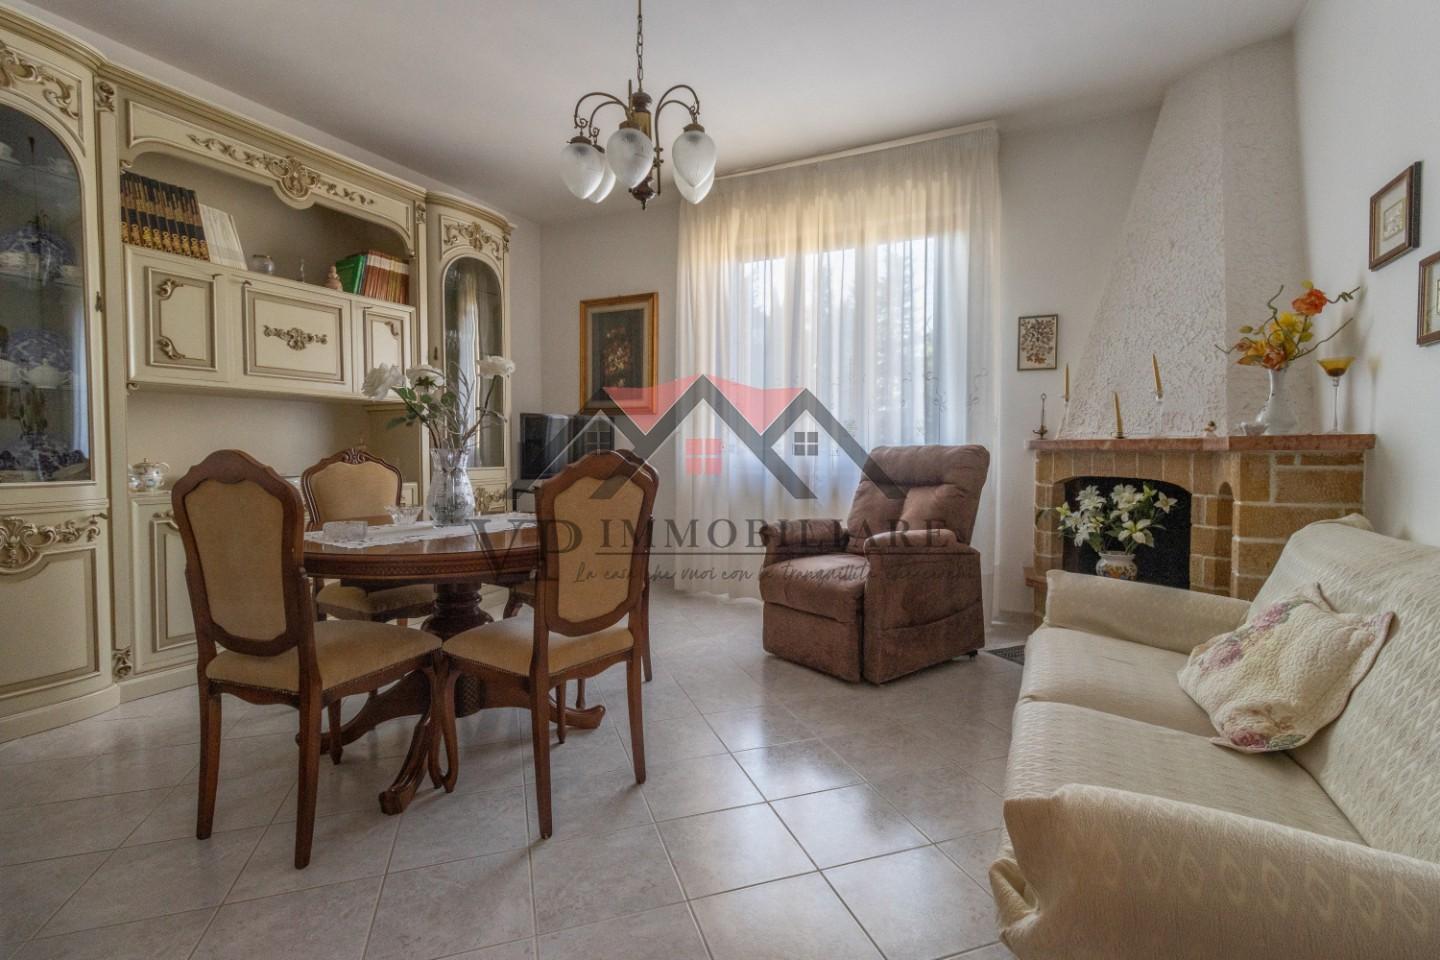 Appartamento in vendita a Pomarance, 5 locali, prezzo € 90.000 | PortaleAgenzieImmobiliari.it